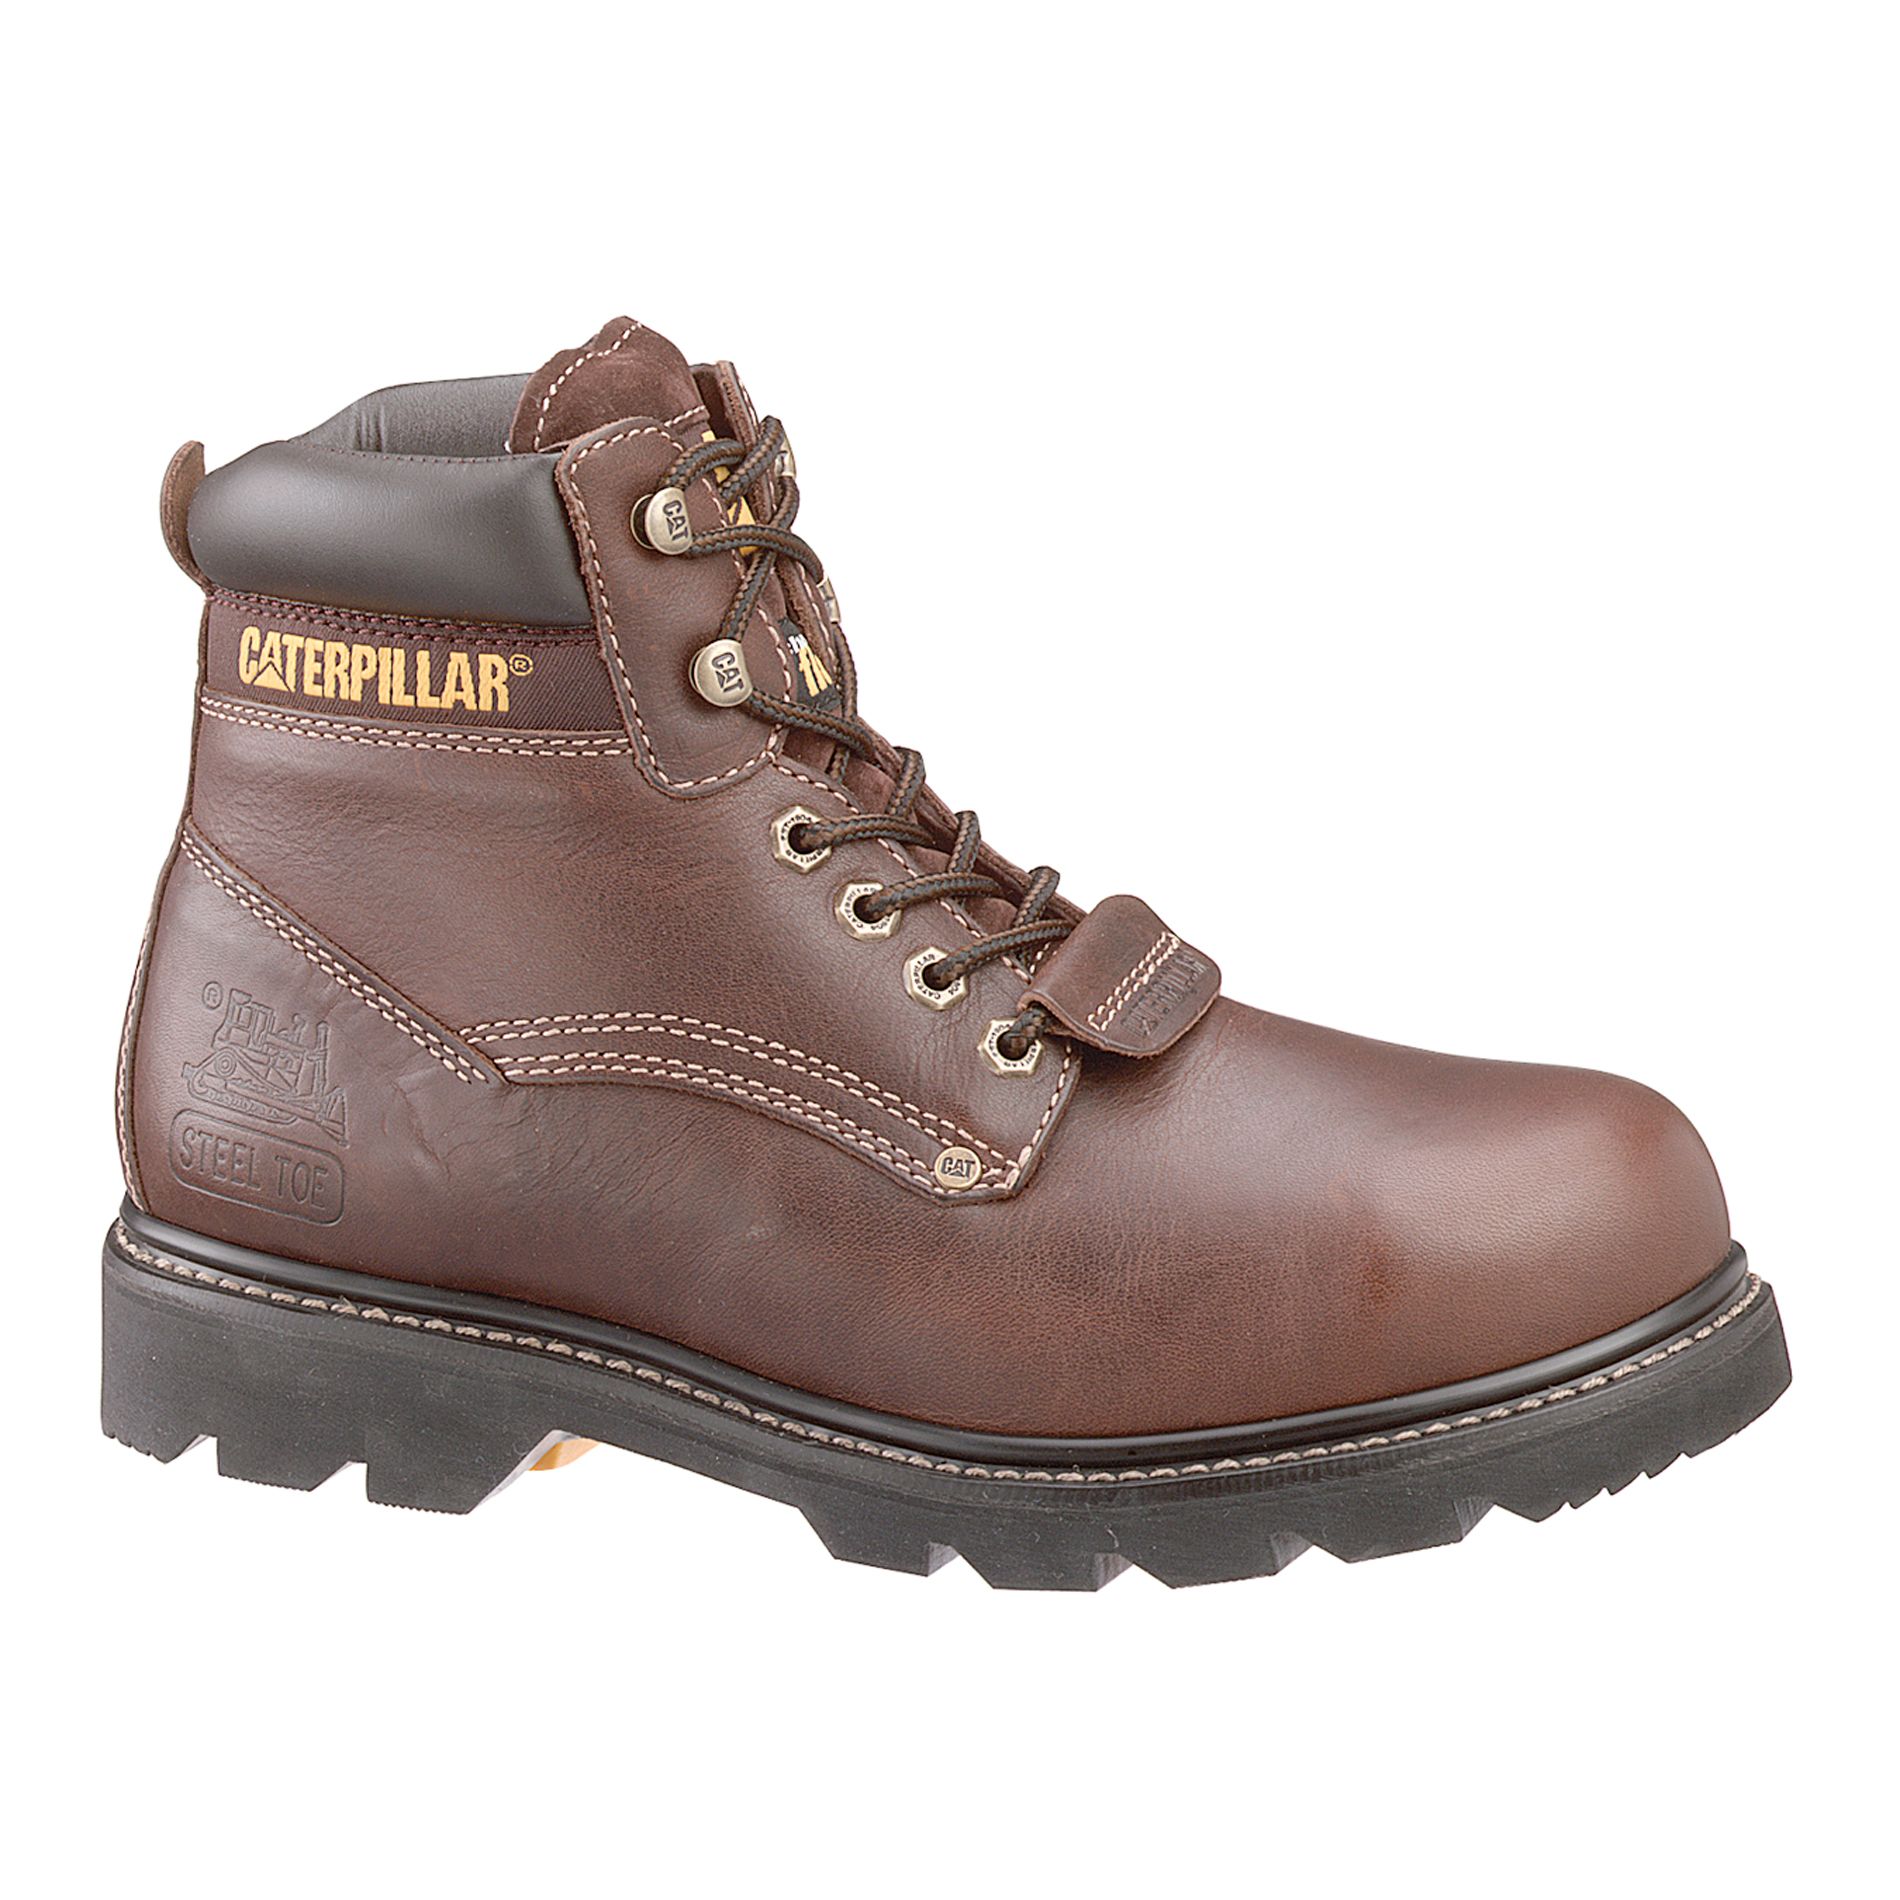 Cat Footwear Men's Work Boots Sheffield FX Steel Toe Brown P89364 Wide Avail